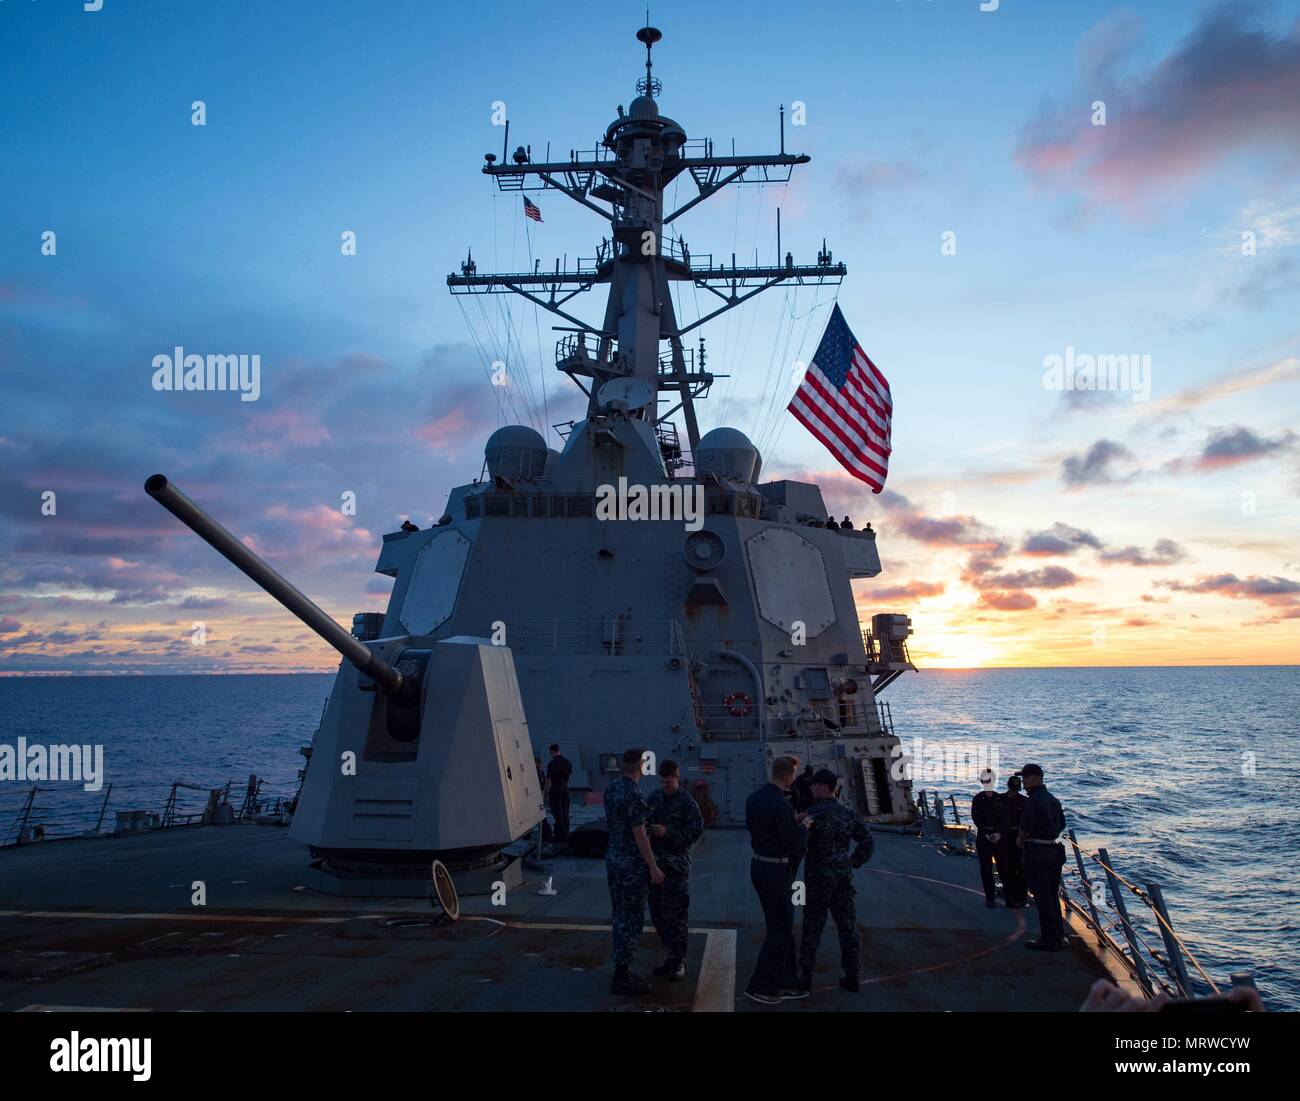 170529-N-HI376-0077SUD PACIFICO (29 giugno 2017) marinai guardare il sole insieme a seguito di una coordinata live-fire gunnery esercizio a bordo distribuita Arleigh Burke-class guidato-missile destroyer USS McCampbell (DDG 85). McCampbell è di pattuglia NEGLI STATI UNITI 7 flotta area di operazioni a sostegno della sicurezza e della stabilità in Indo-Asia-regione del Pacifico. (U.S. Foto di Marina di Massa lo specialista di comunicazione 2a classe Jeremy Graham/rilasciato) Foto Stock